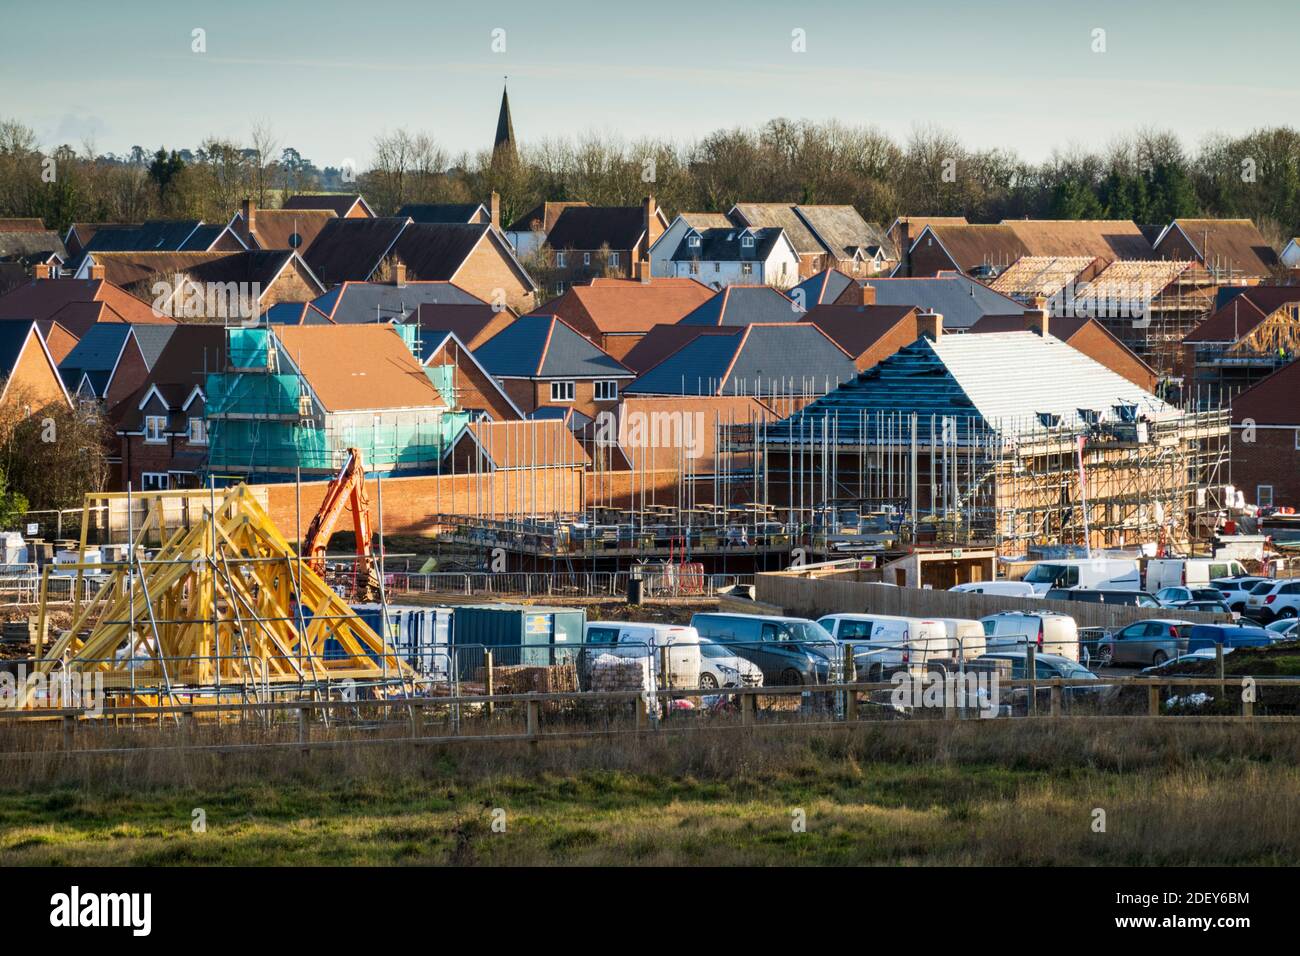 Nouveau développement de logements "Watership" à la périphérie de la petite ville de Whitchurch à côté de l'A34, Whitchurch, Hampshire, Angleterre, Royaume-Uni Banque D'Images